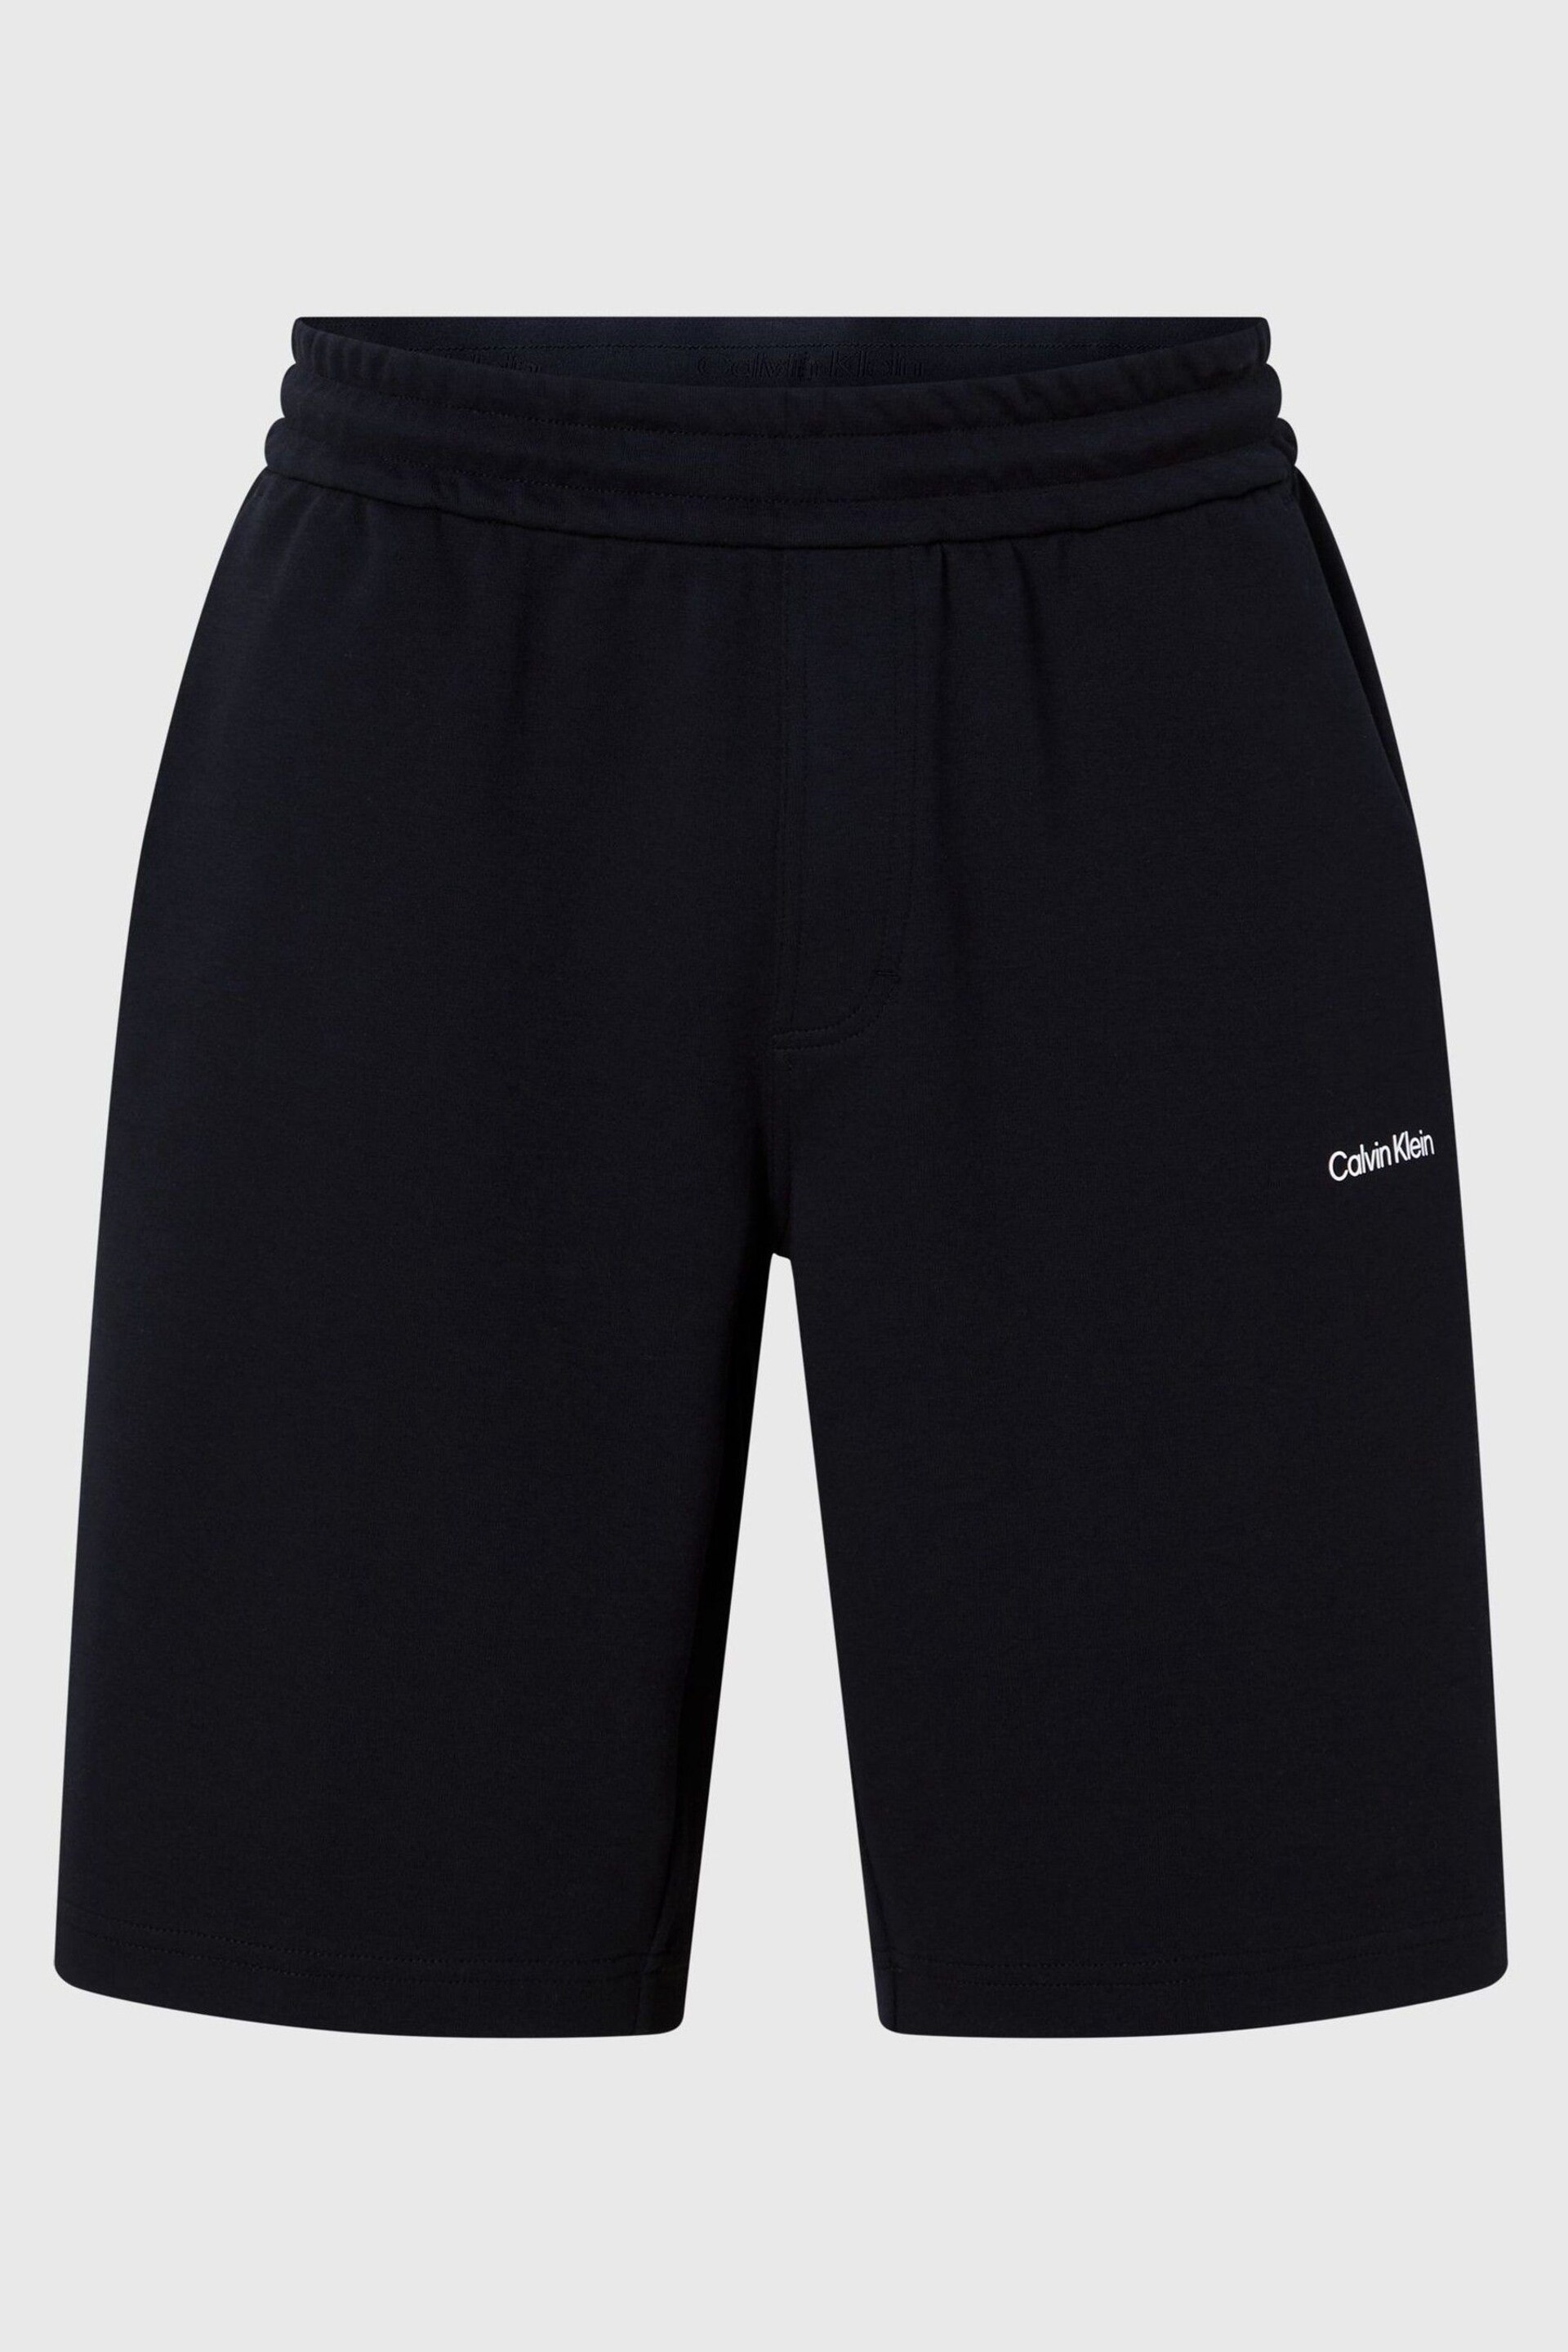 Calvin Klein Black Logo Shorts - Image 5 of 5